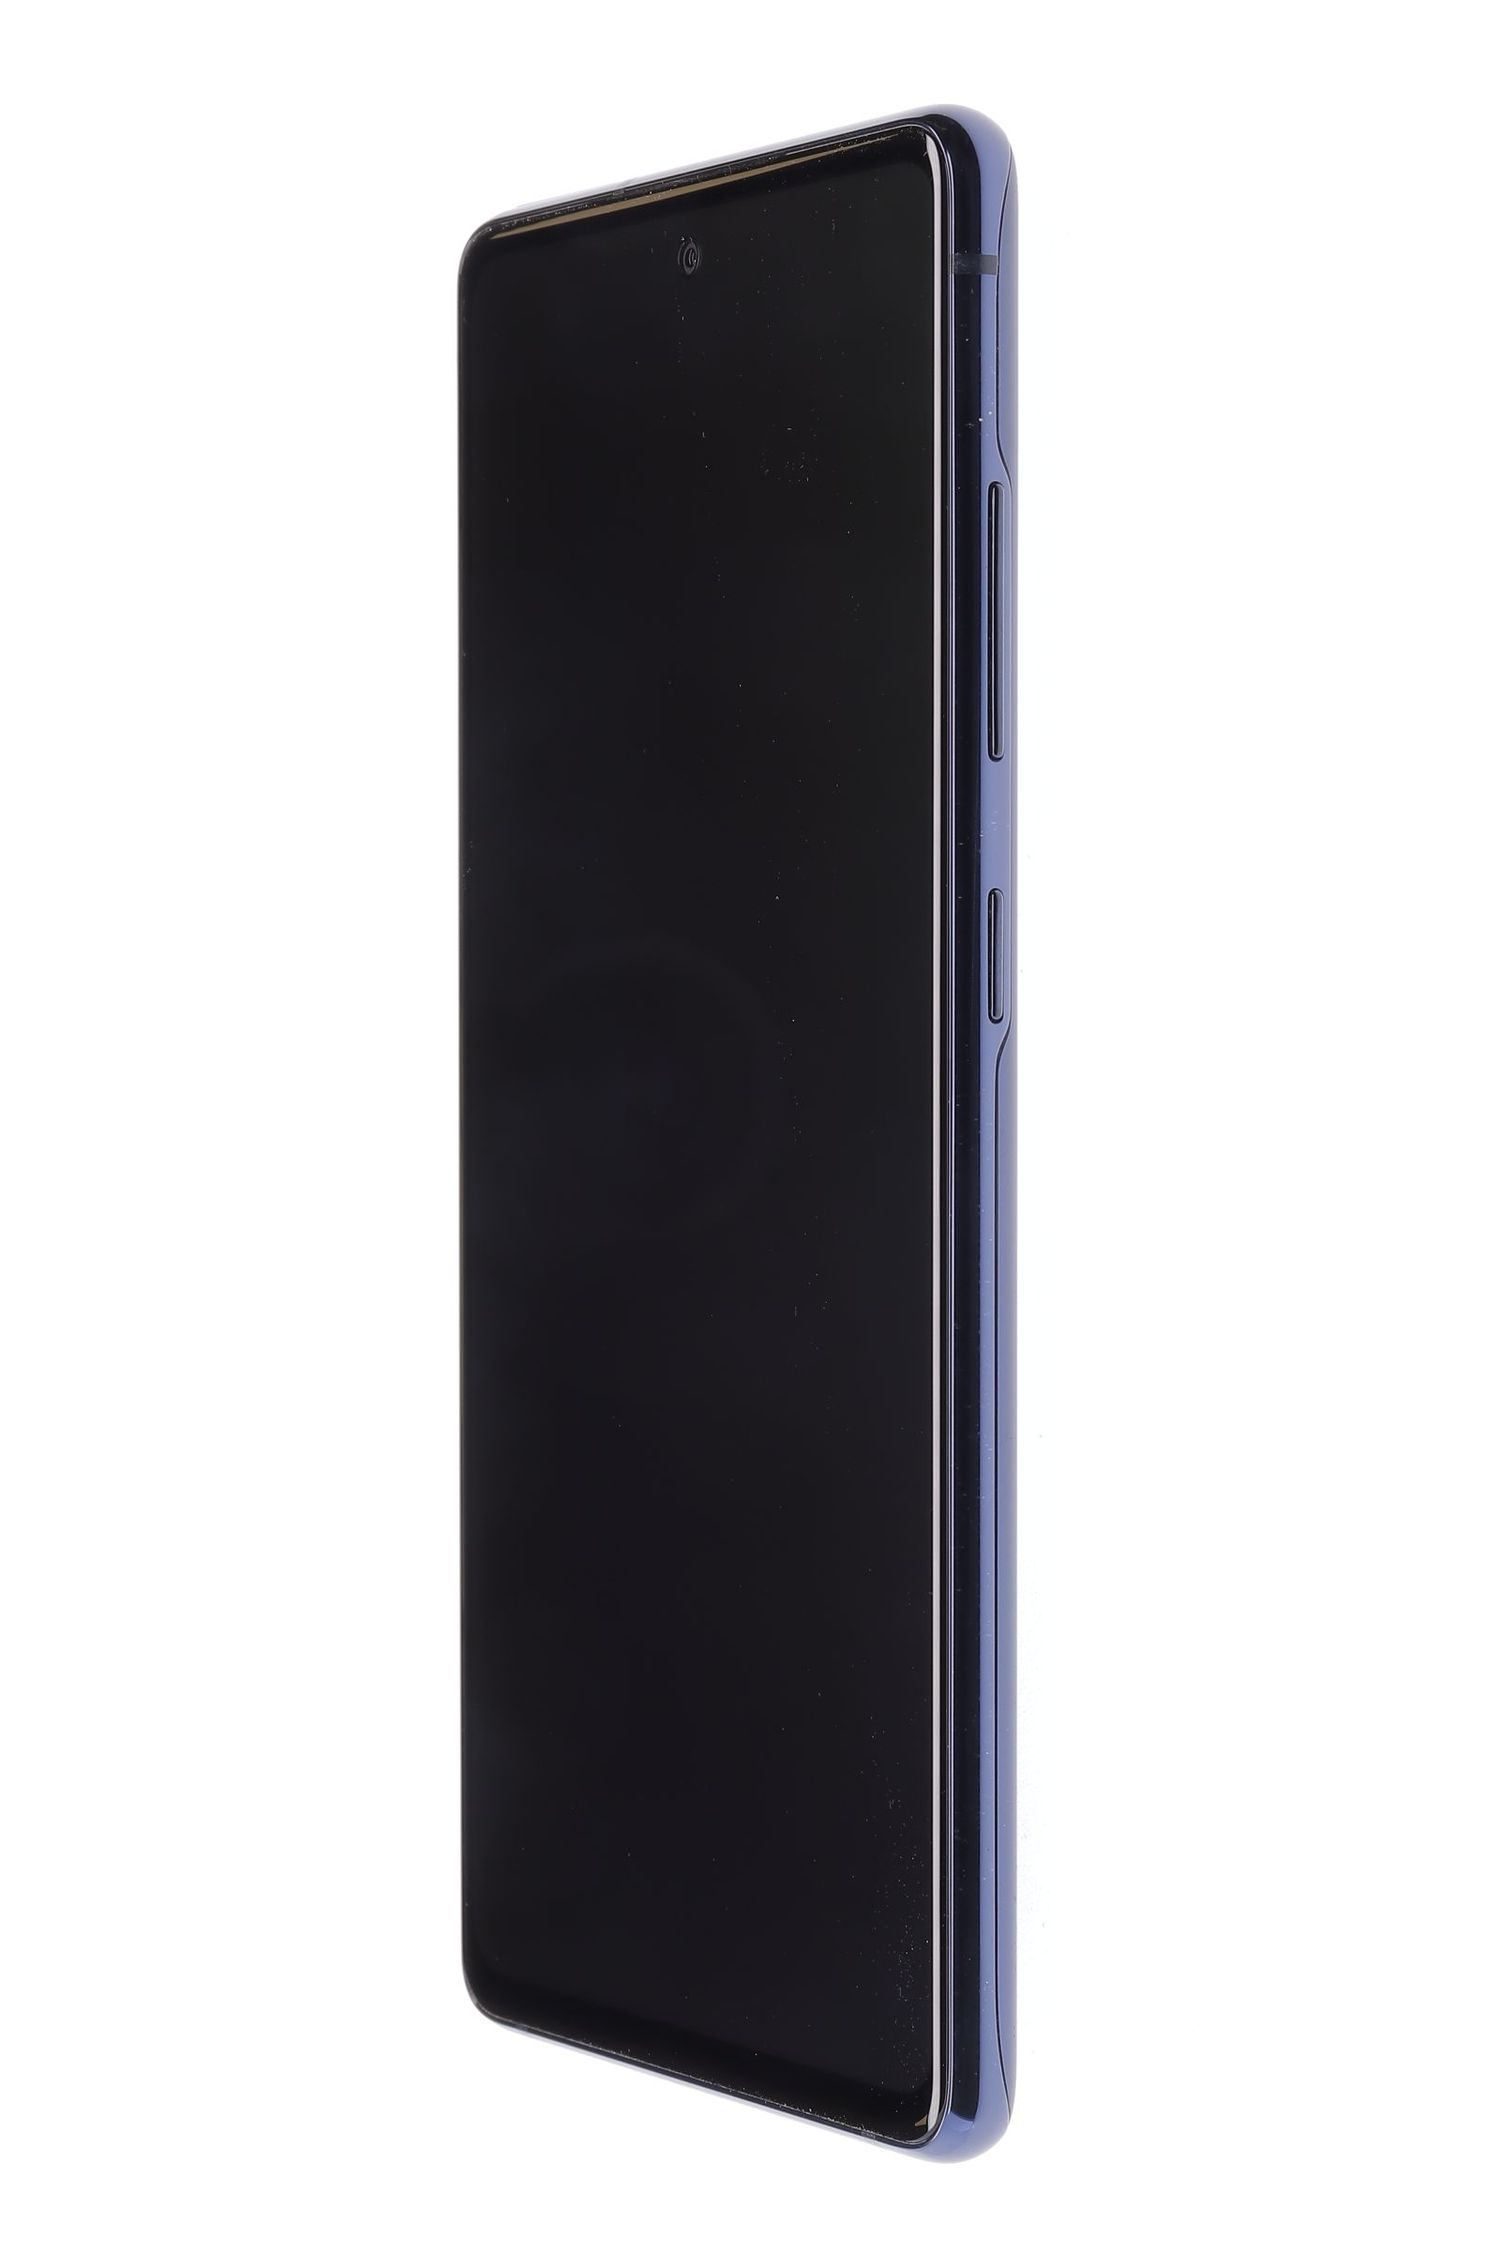 Κινητό τηλέφωνο Samsung Galaxy S20 FE Dual Sim, Cloud Navy, 128 GB, Foarte Bun